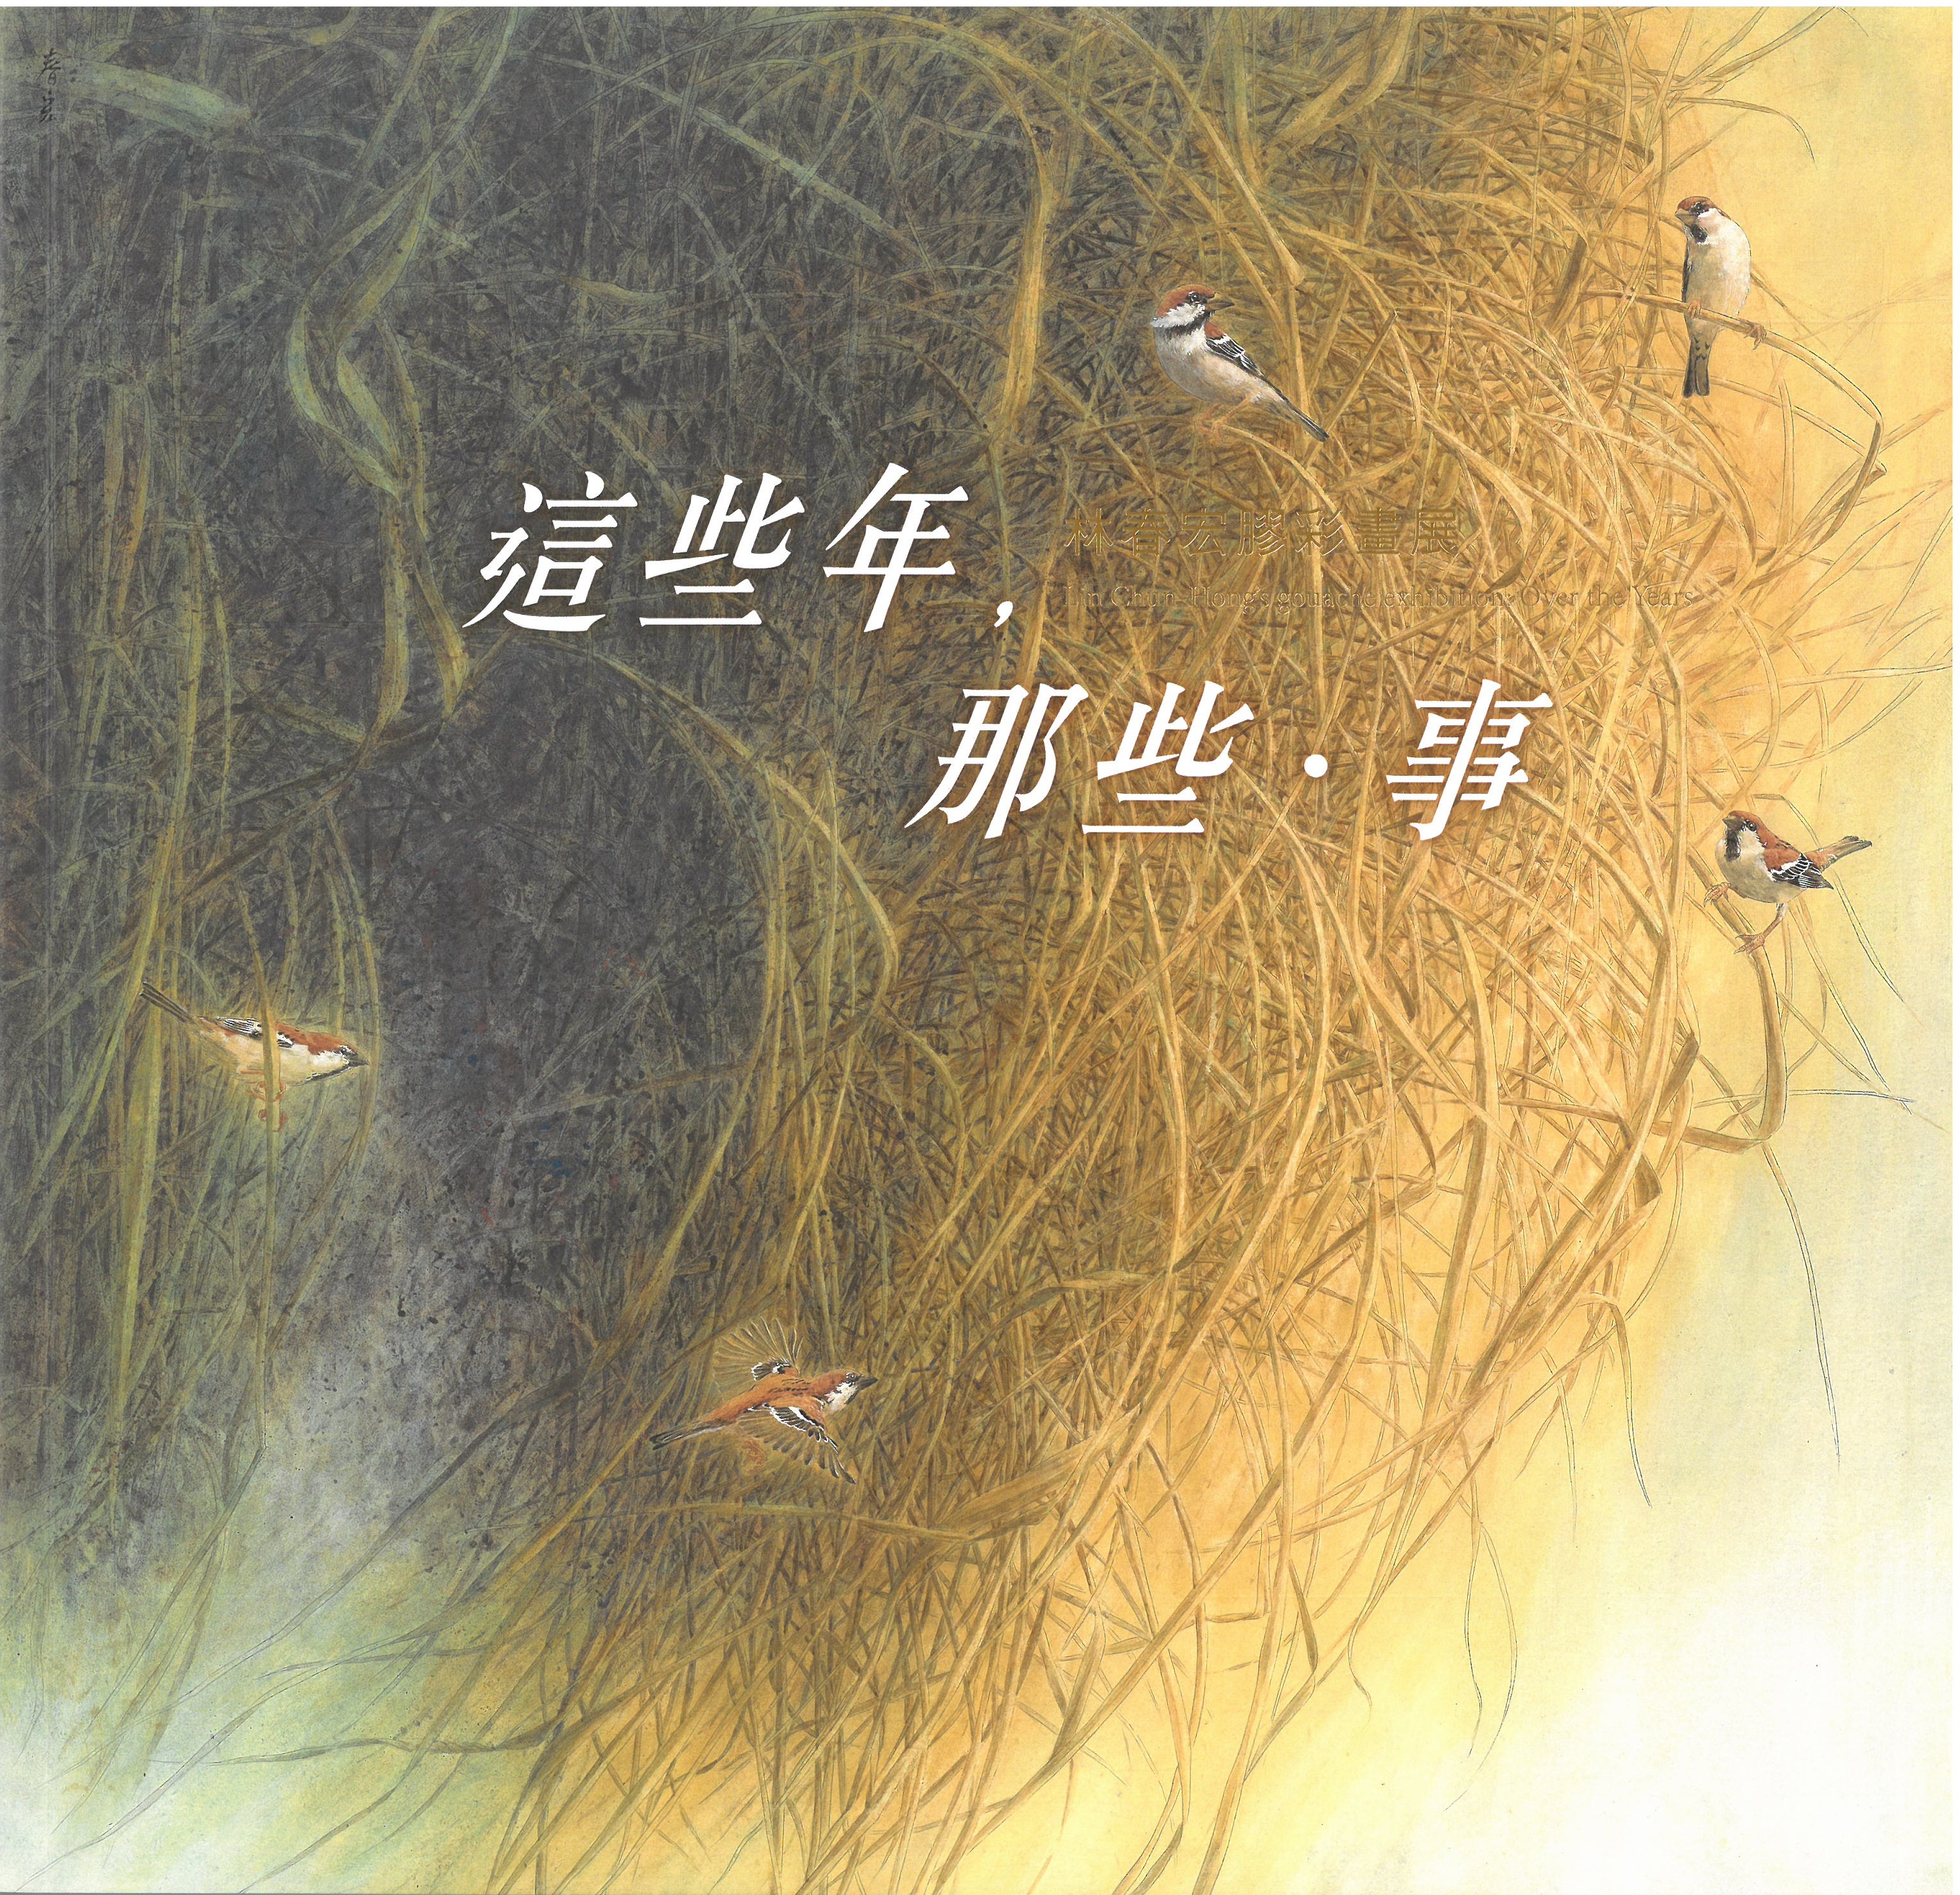 (絕版)這些年，那些．事—林春宏膠彩畫展 / 藝術薪火相傳—第10屆臺中市美術家接力展 封面